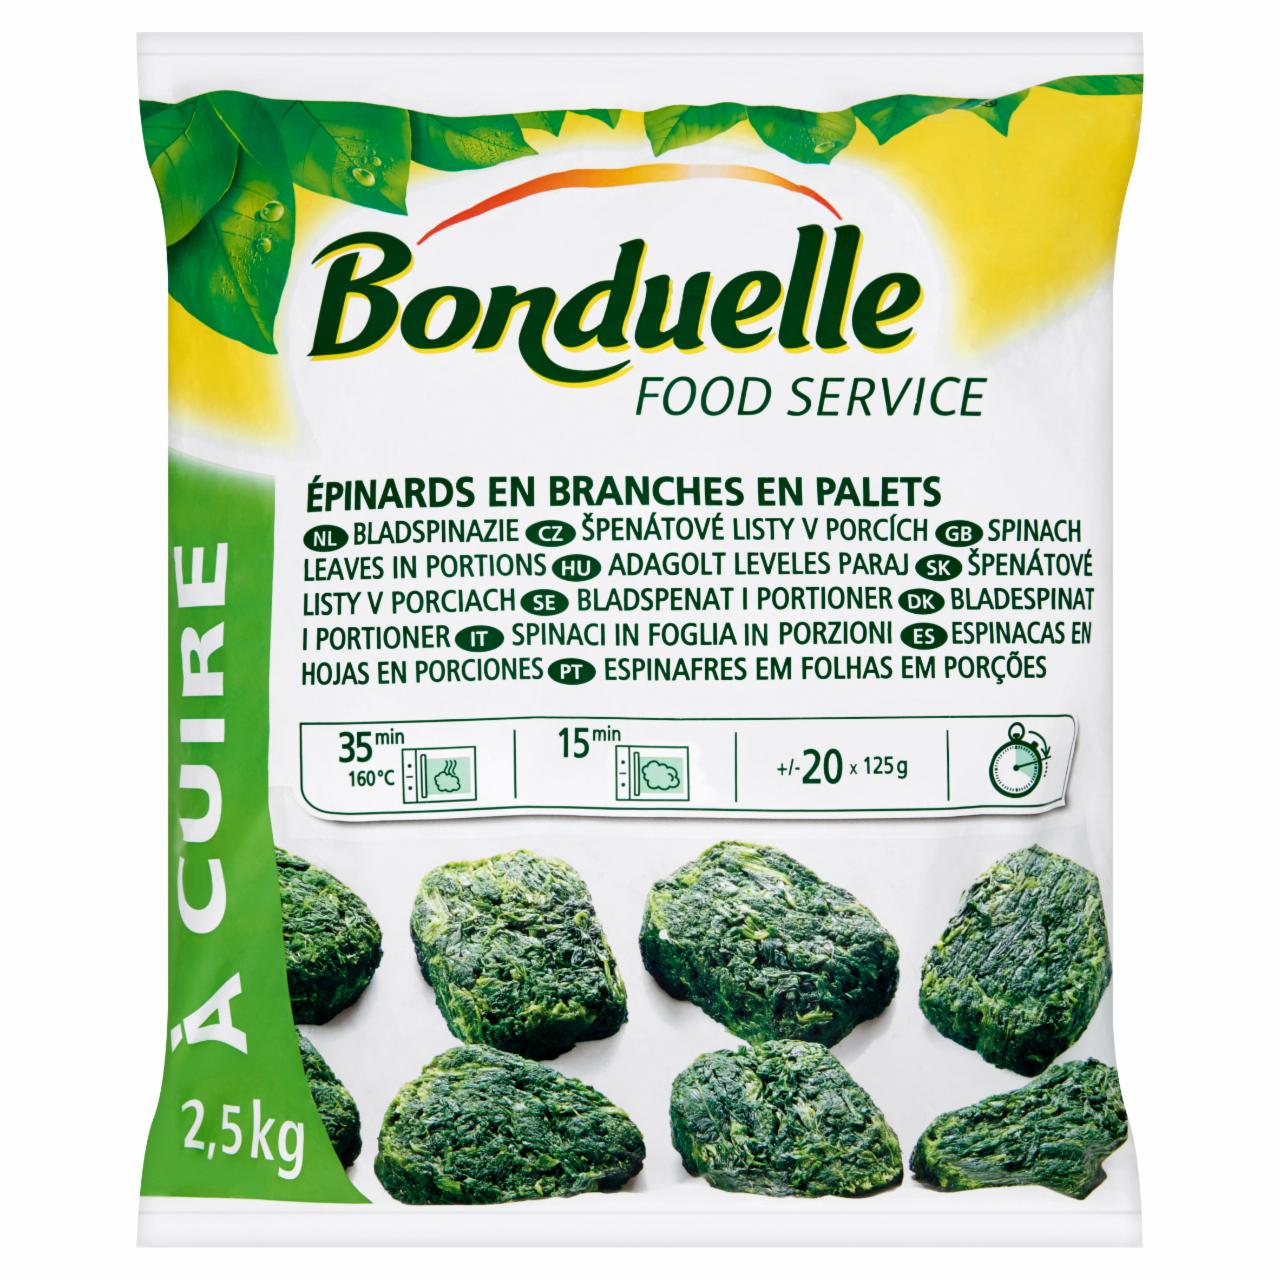 Képek - Bonduelle Food Service gyorsfagyasztott adagolt leveles paraj 2,5 kg